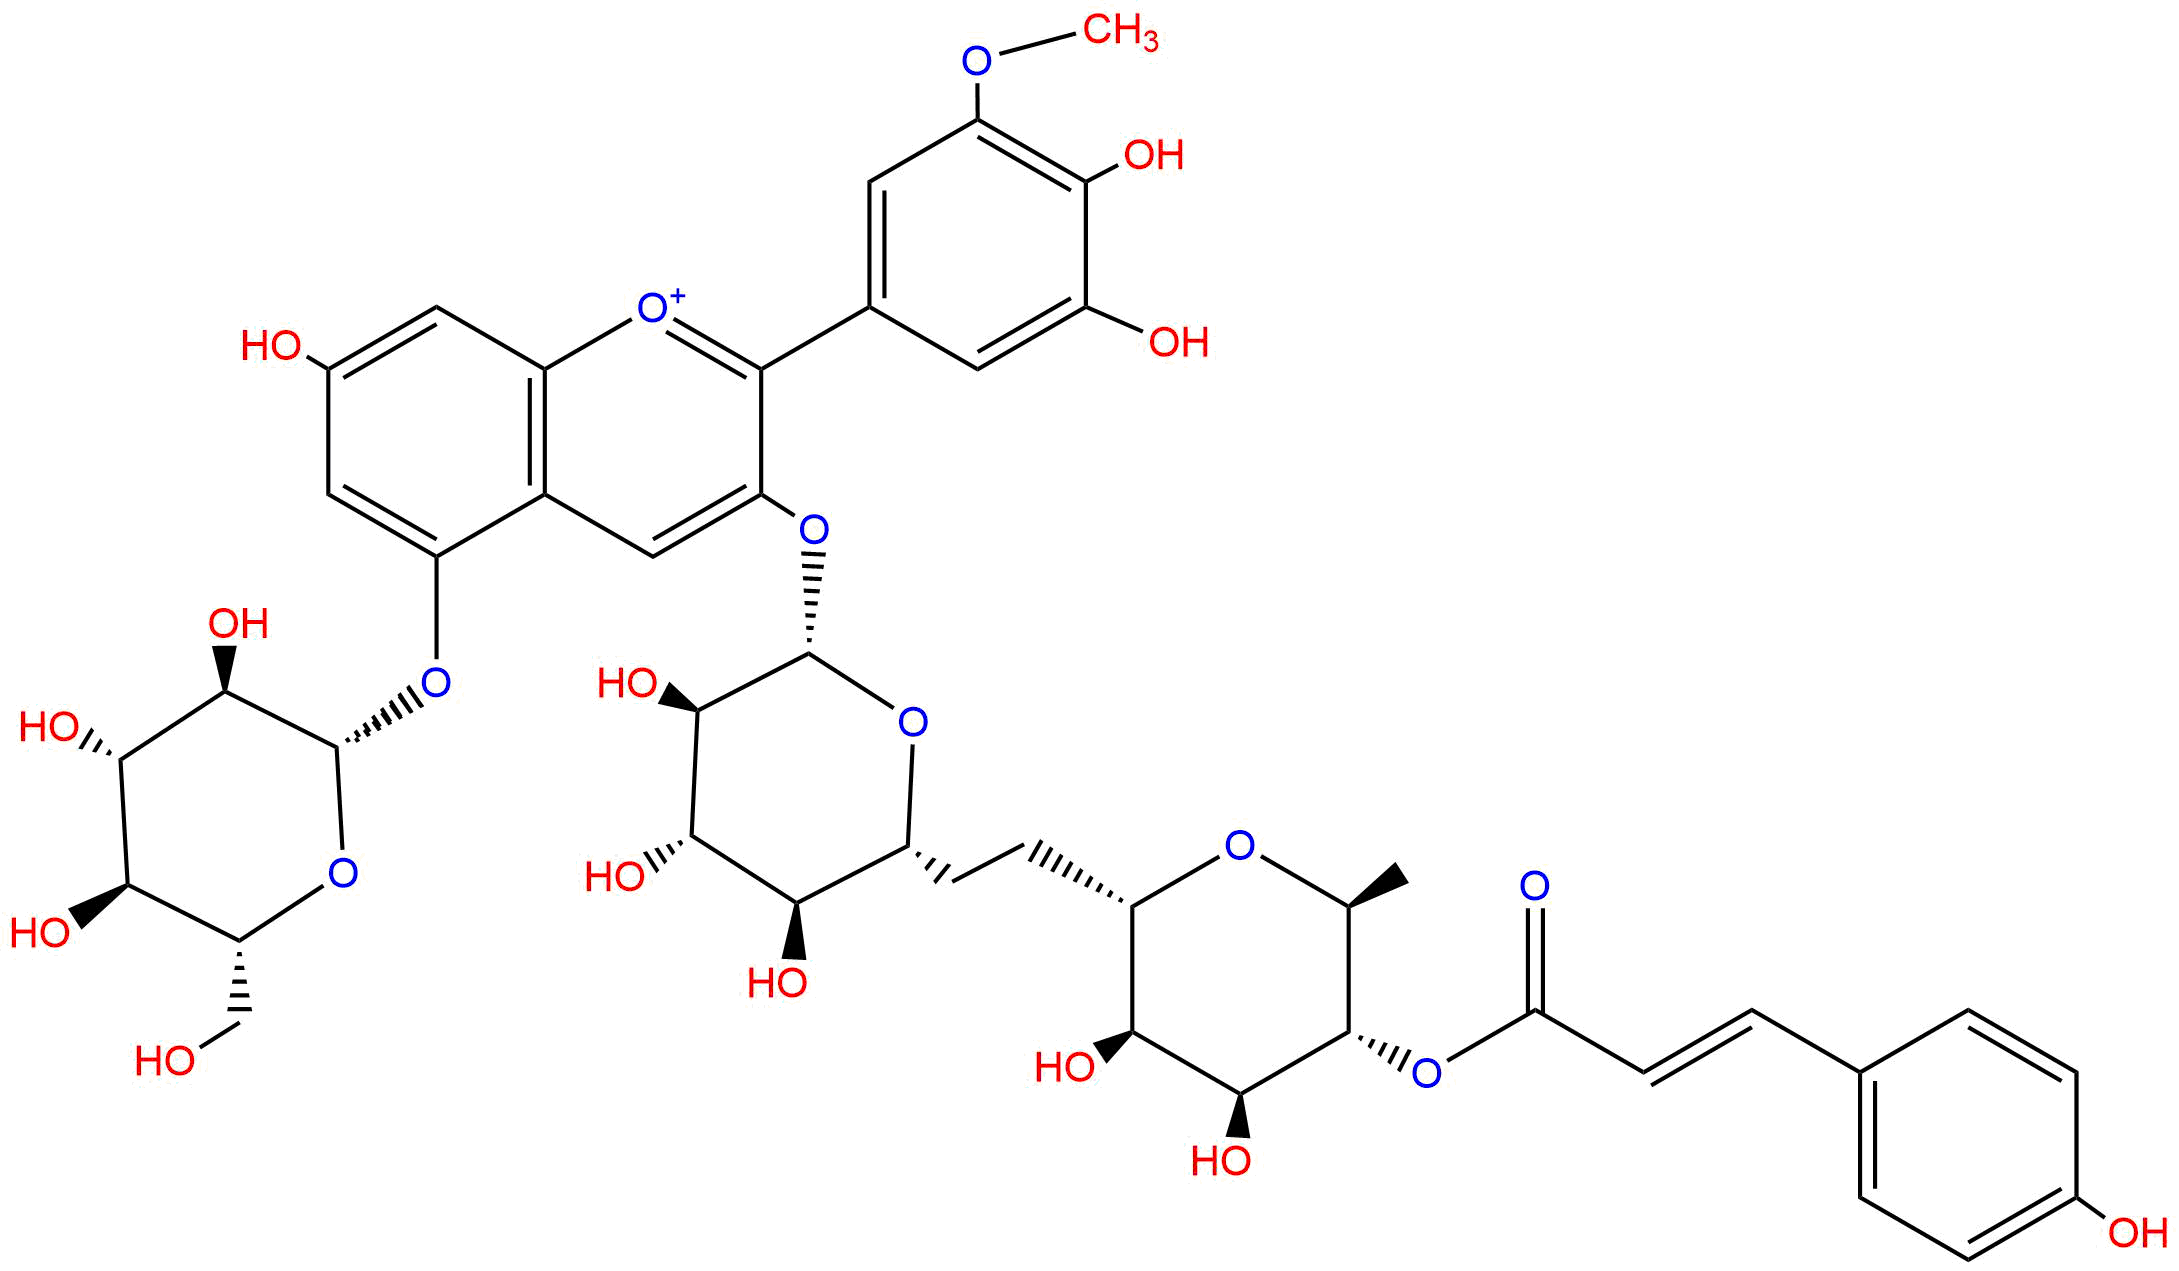 Petunidin 3-(p-coumaroylrutinoside)-5- glucoside